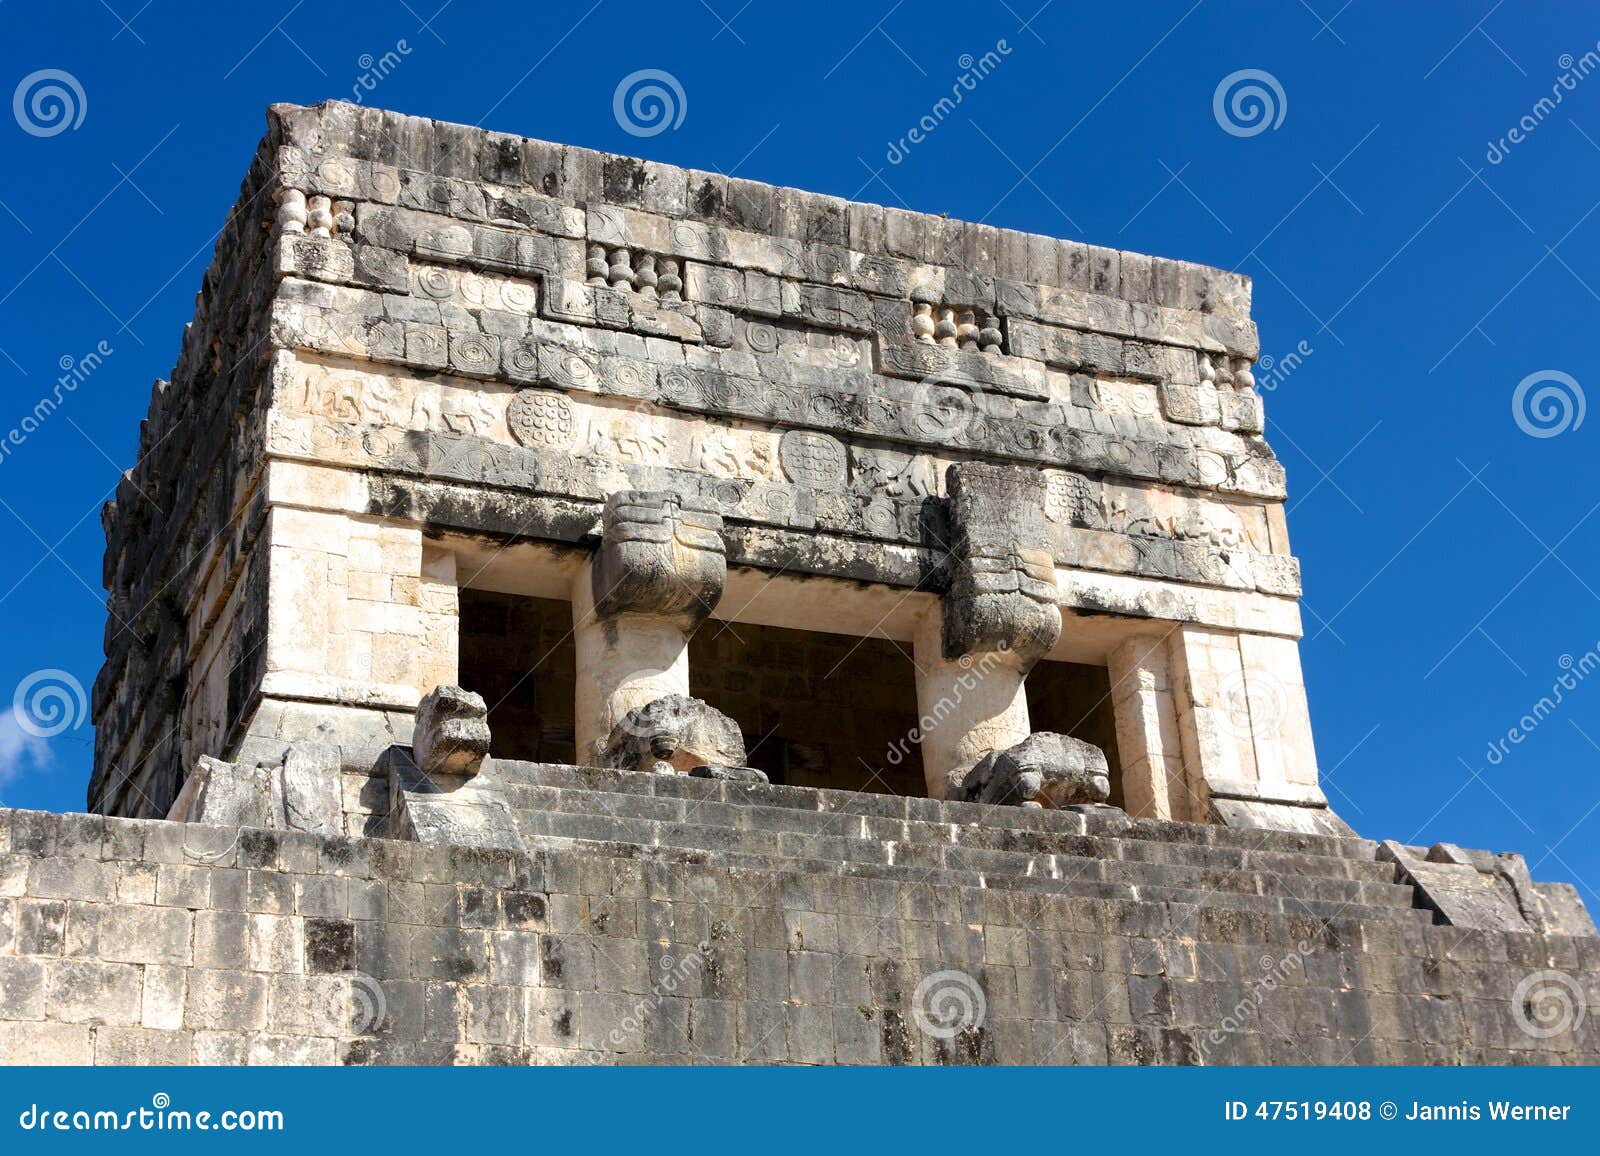 Juego de pelota de Chichen Itza. Detalle de una torre en las ruinas de Juego de Pelota (juego de pelota) en la ciudad maya de Chichen Itza, México